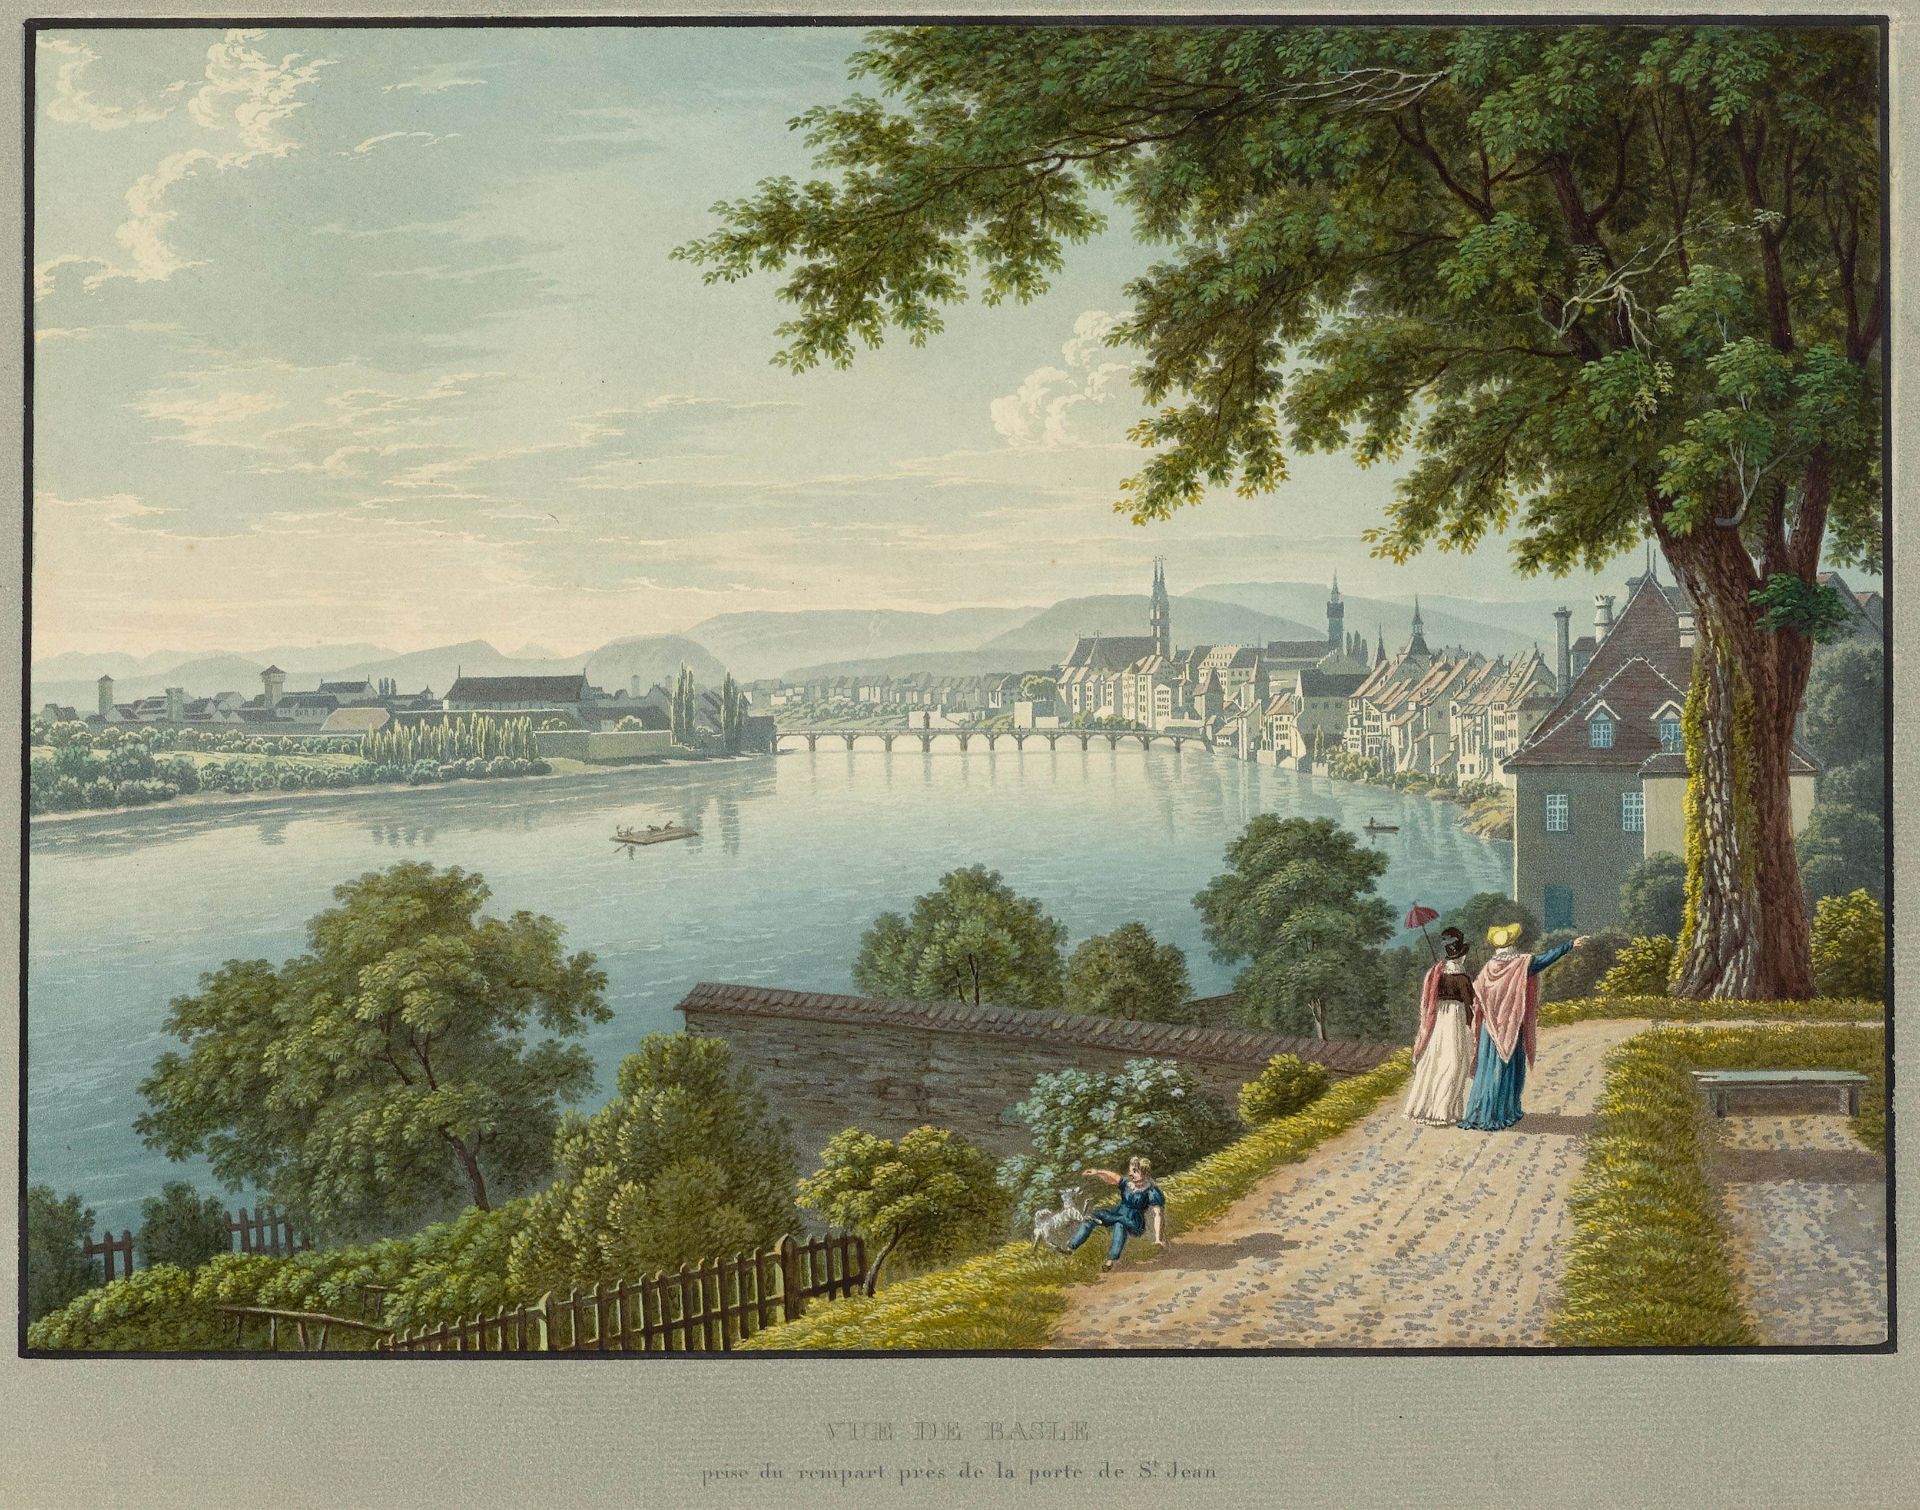 BASEL.-Vue de Basle, prise du rempart près de la port de St. Jean. Um 1840.Altkolorierte